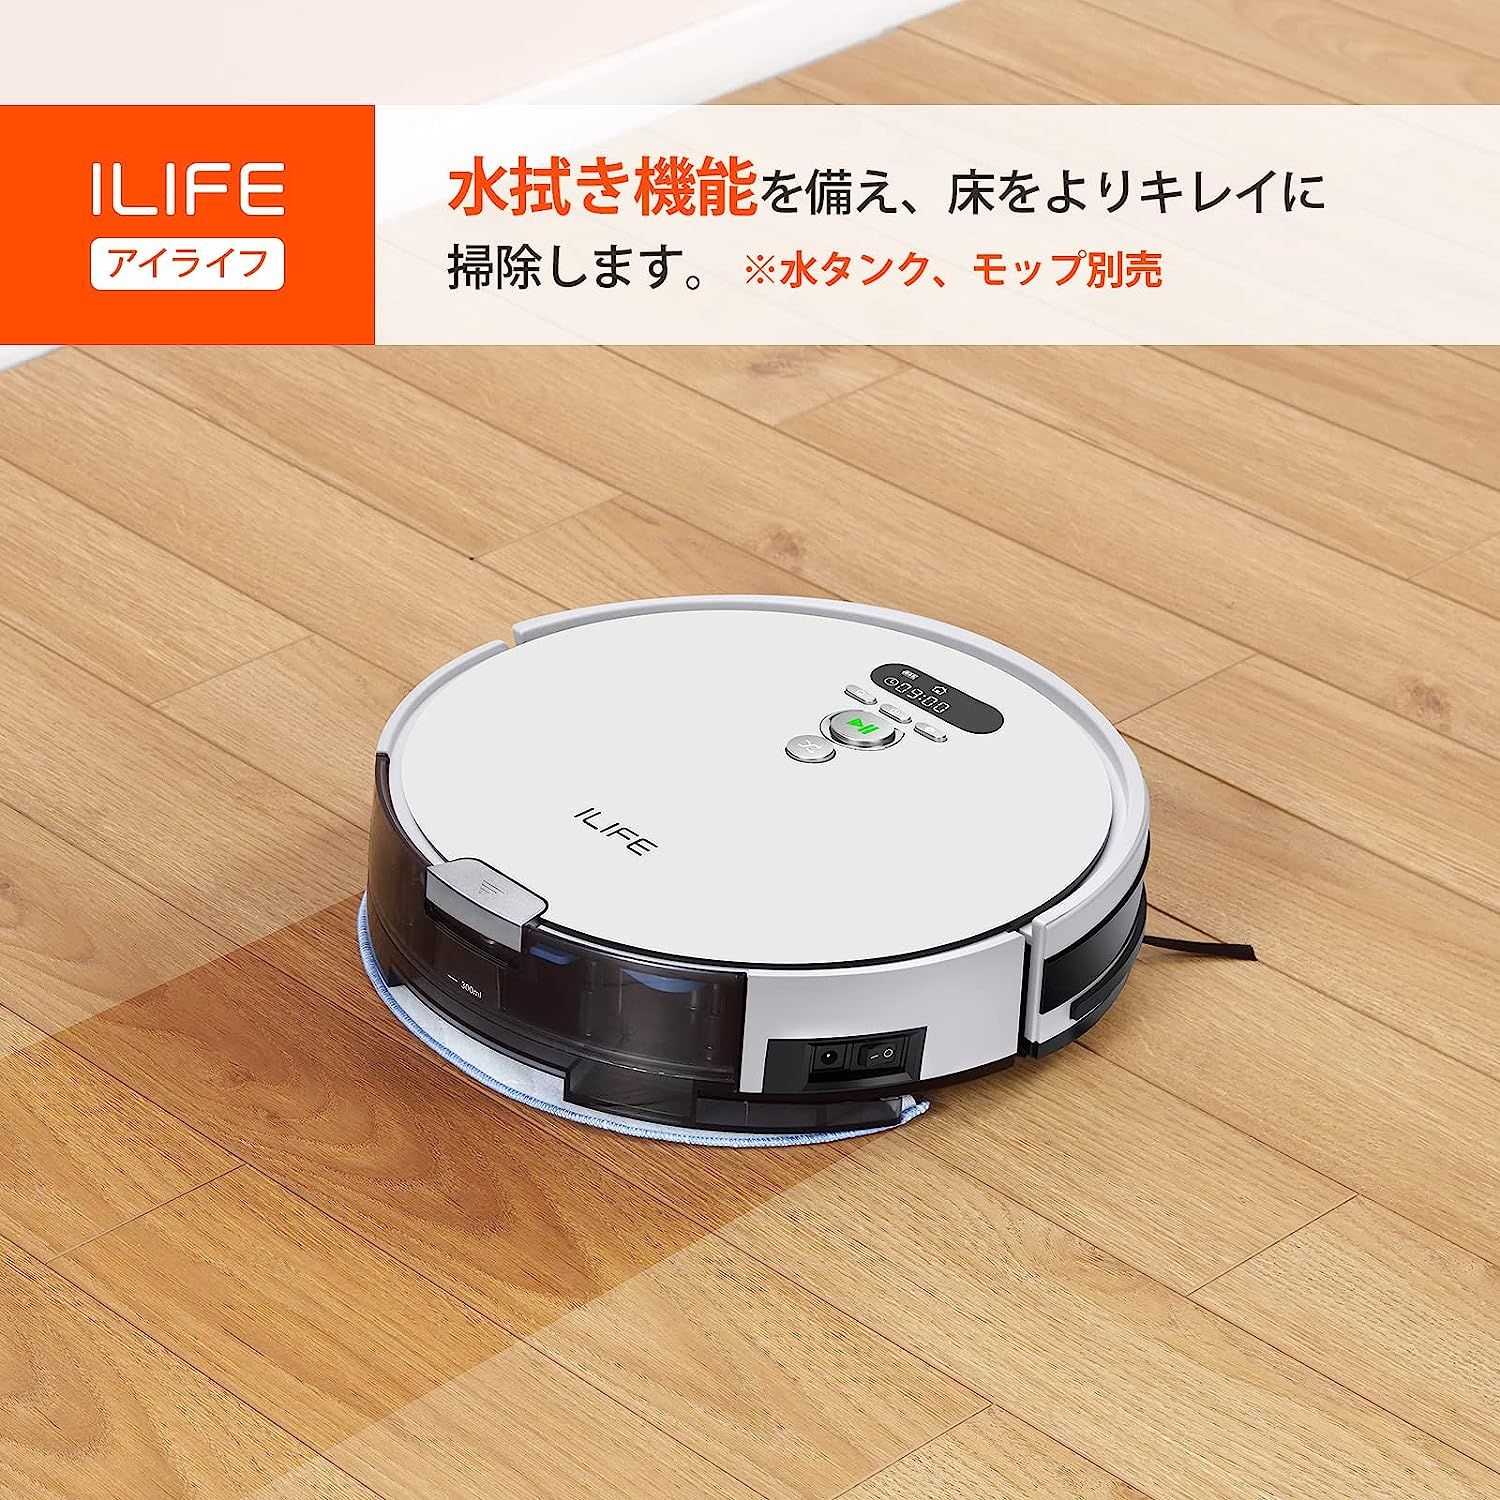 ILIFE アイライフ ロボット掃除機 V8e - 掃除機